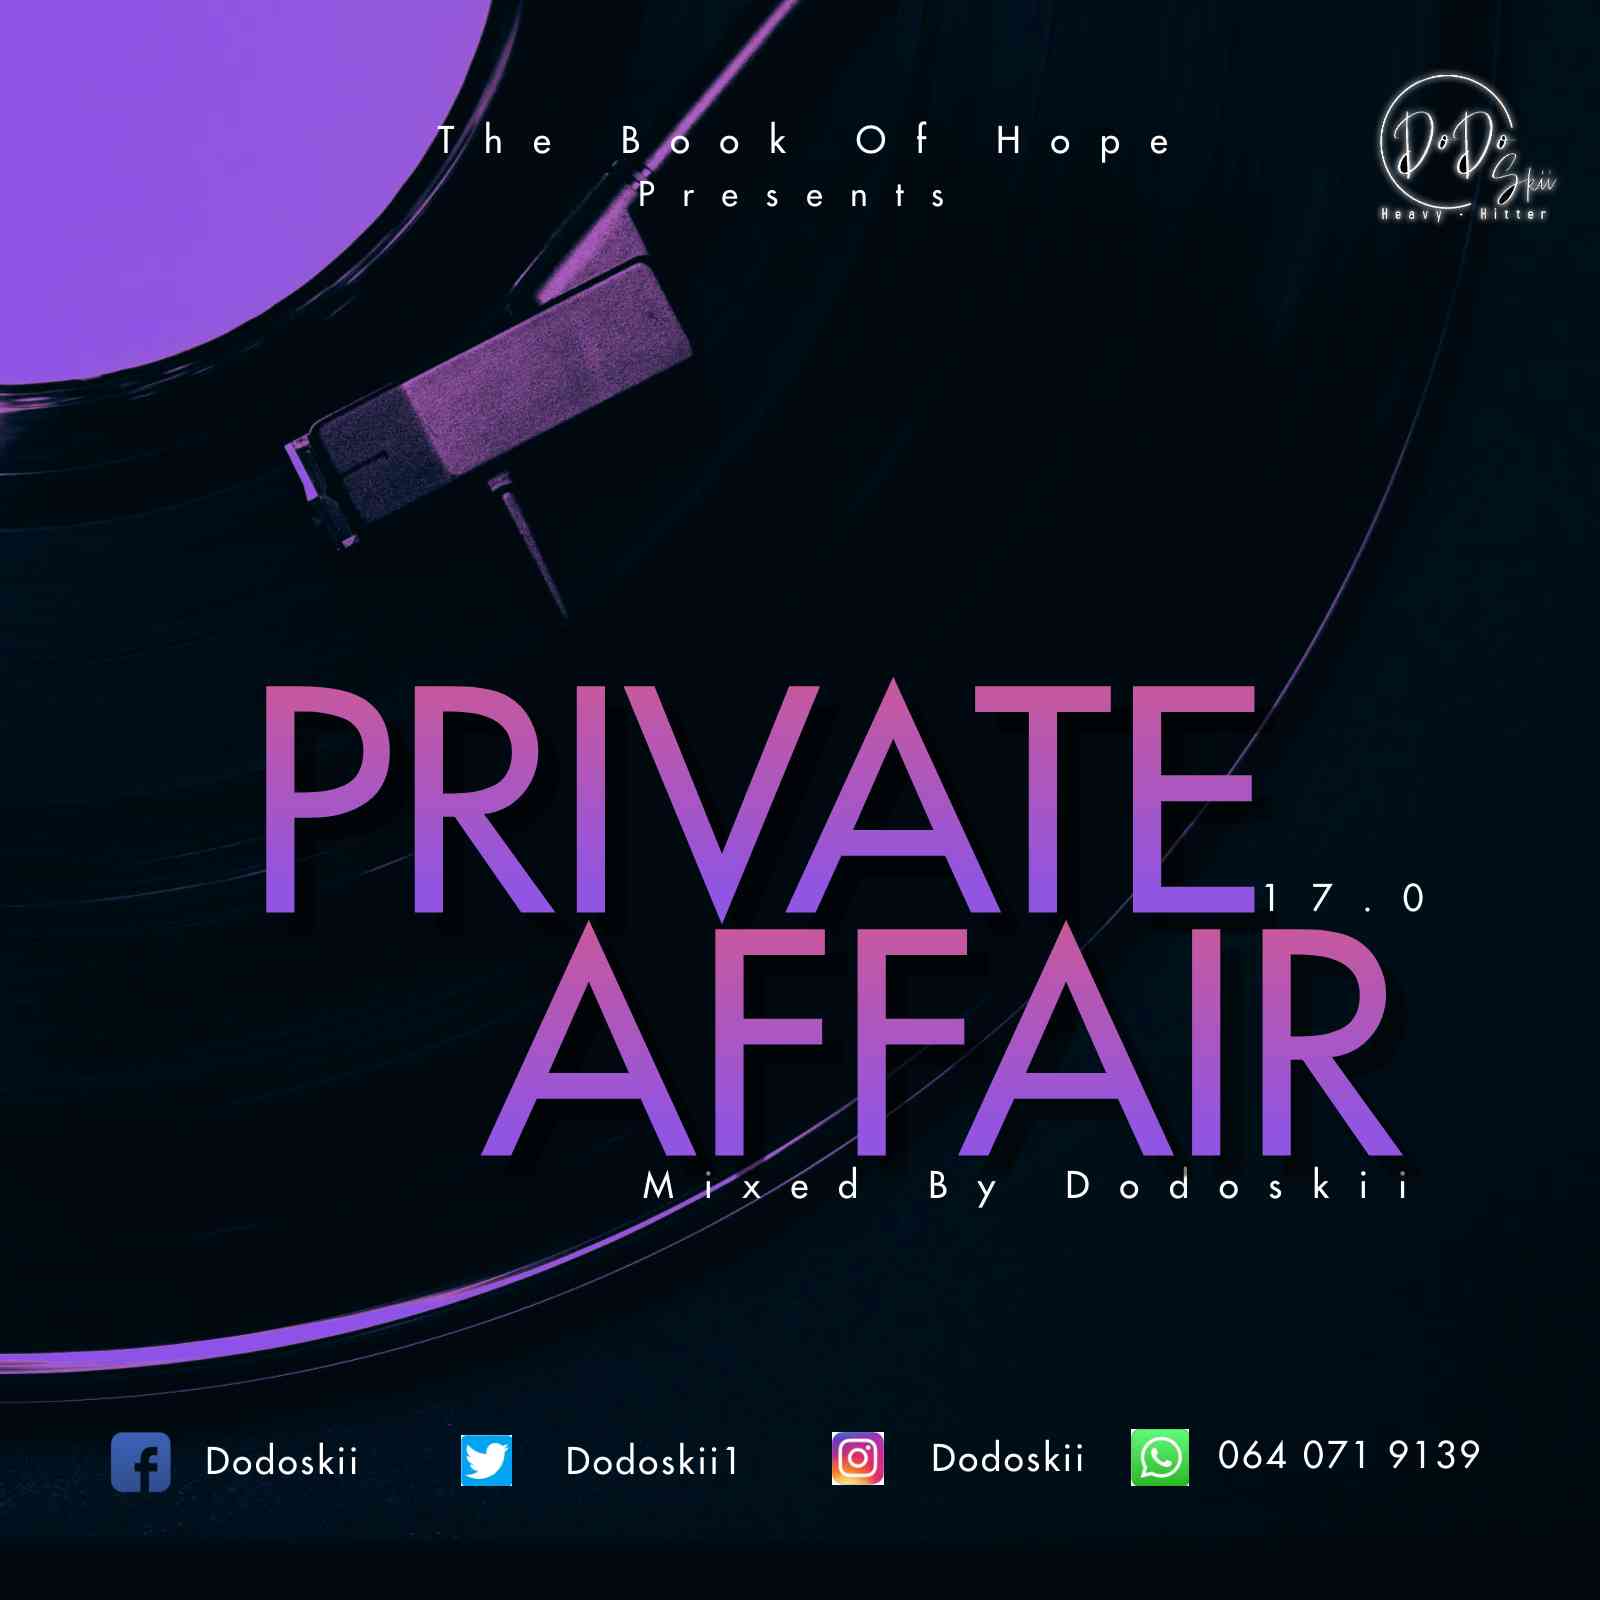 Dodoskii Private Affair 17.0 Mix